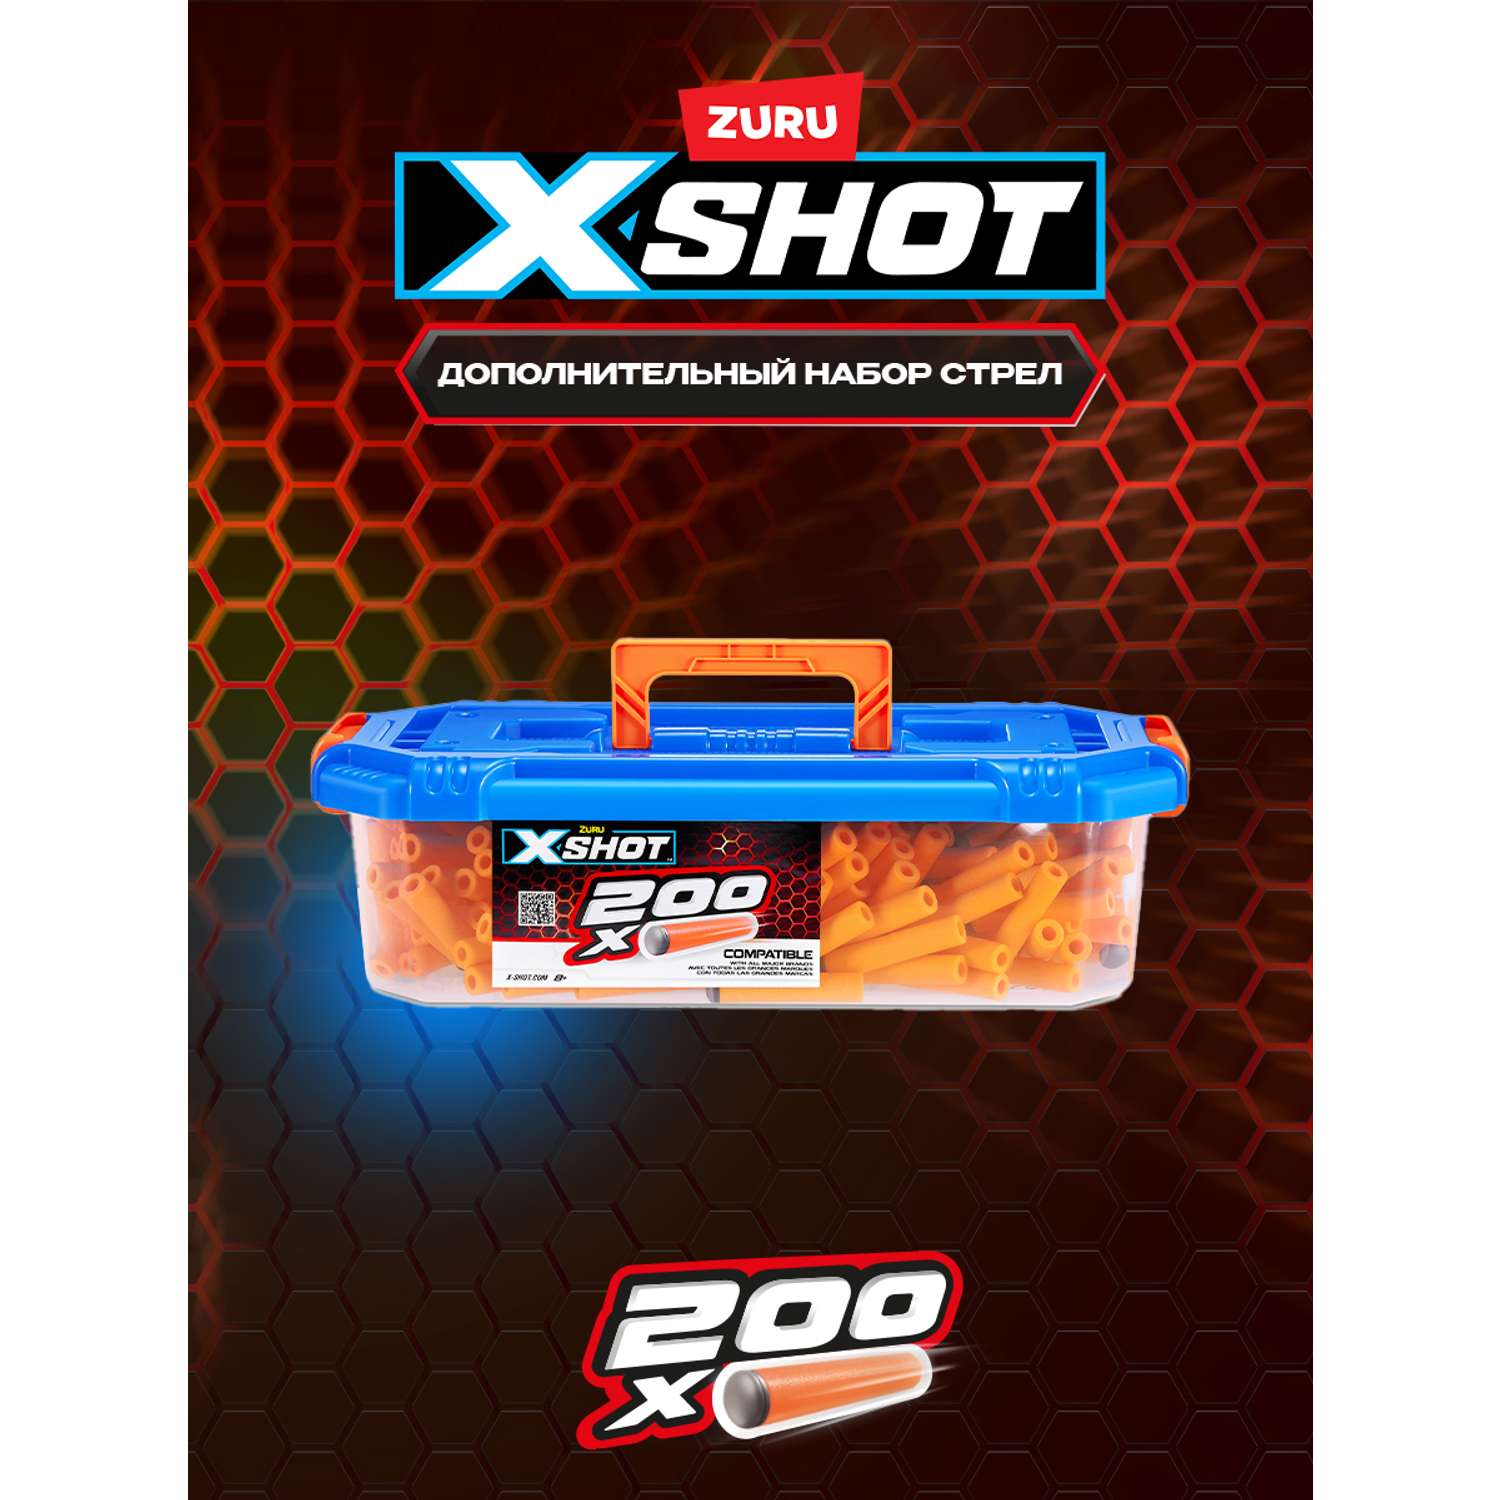 Набор дротиков X-SHOT  дополнительные 200 шт. 36181 - фото 1